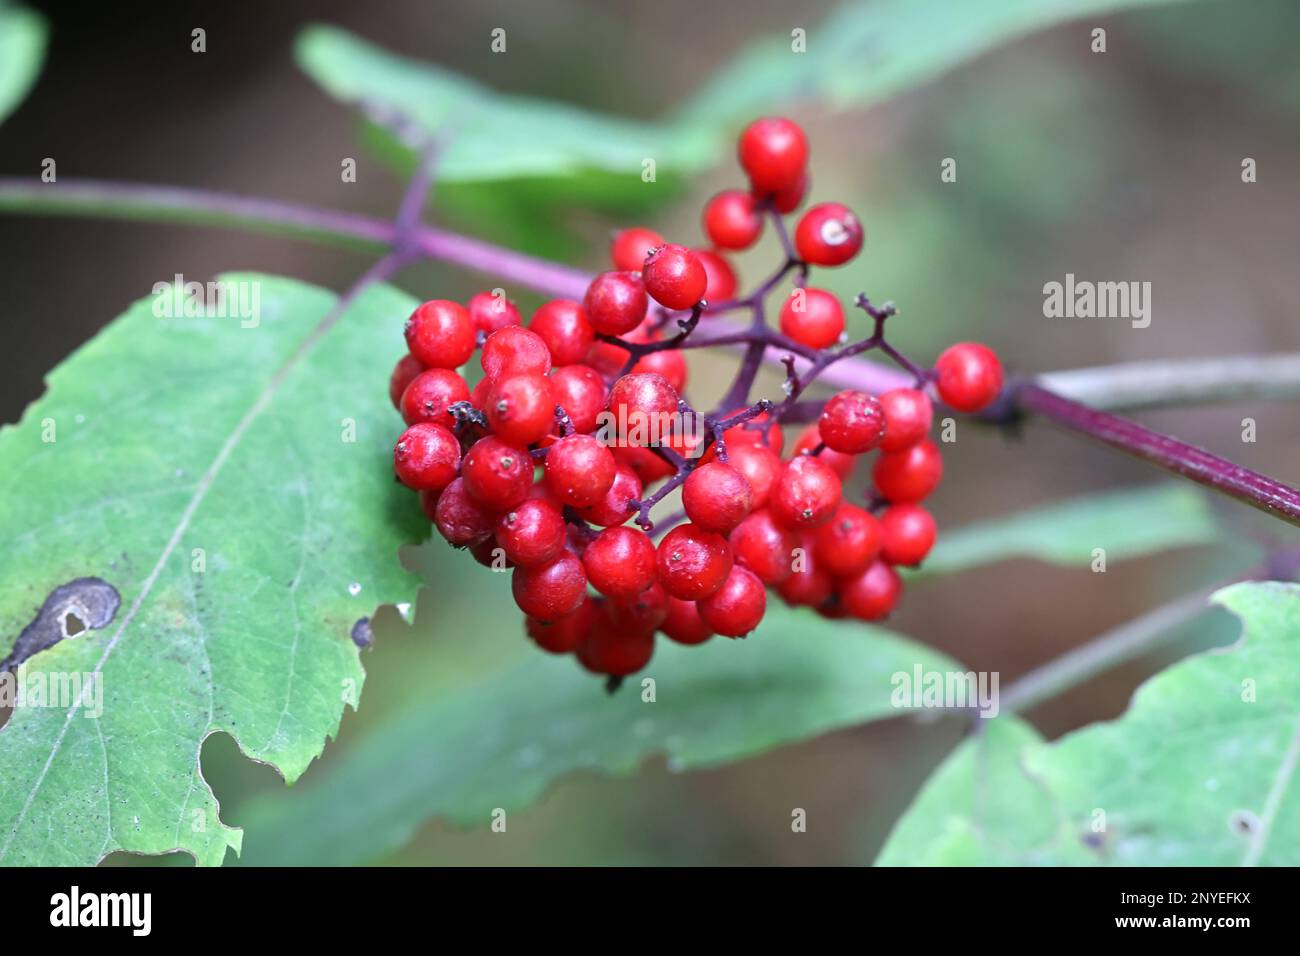 Sambuco rosso immagini e fotografie stock ad alta risoluzione - Alamy